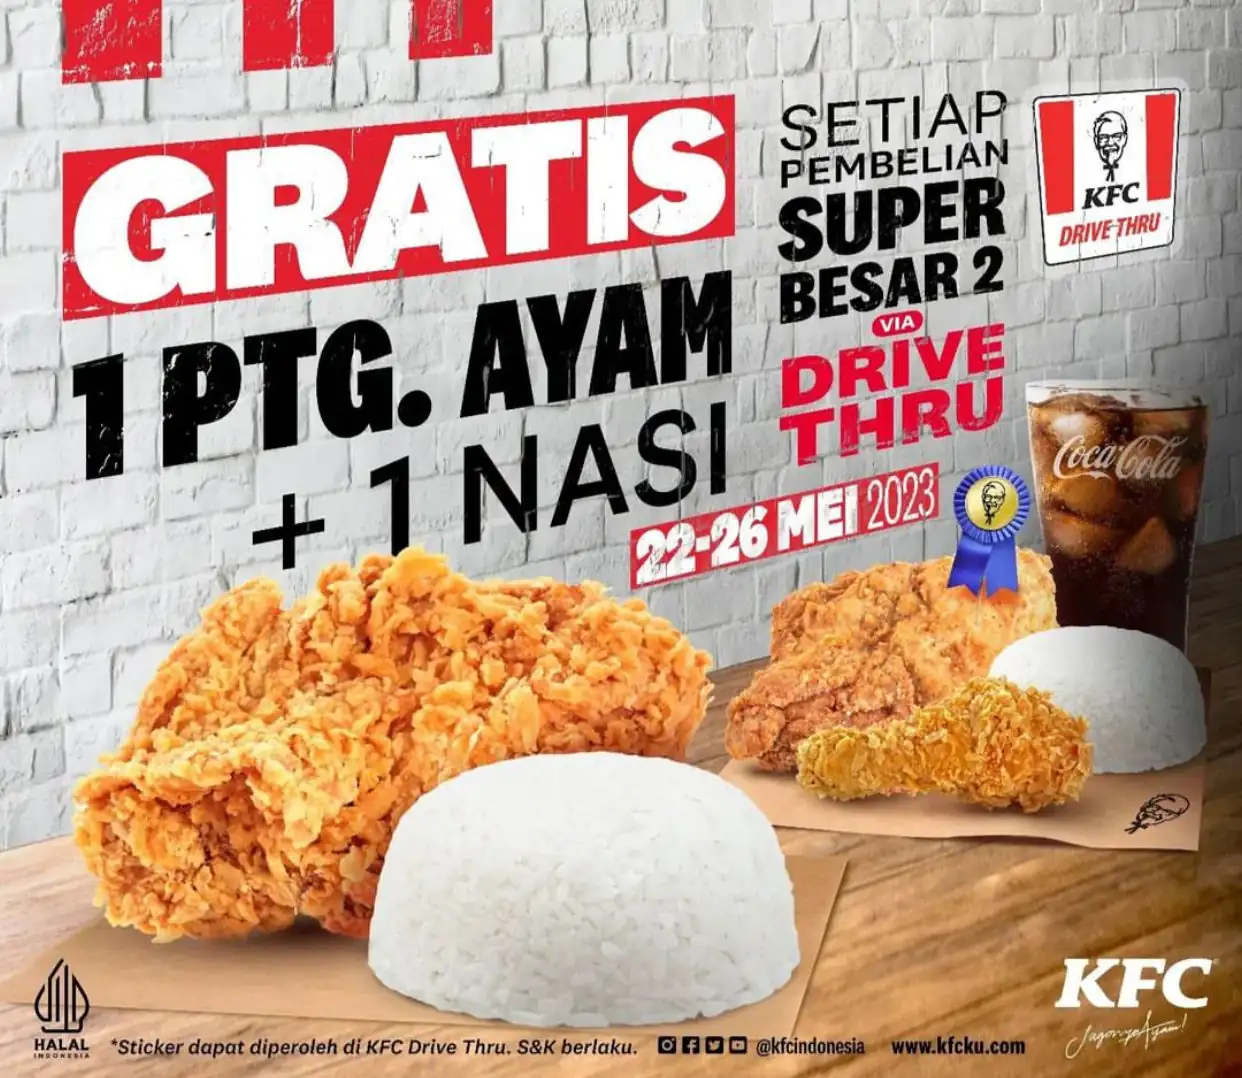 Promo KFC Bisa Dapat Gratis Ayam Via Pembelian Ini, Cek!